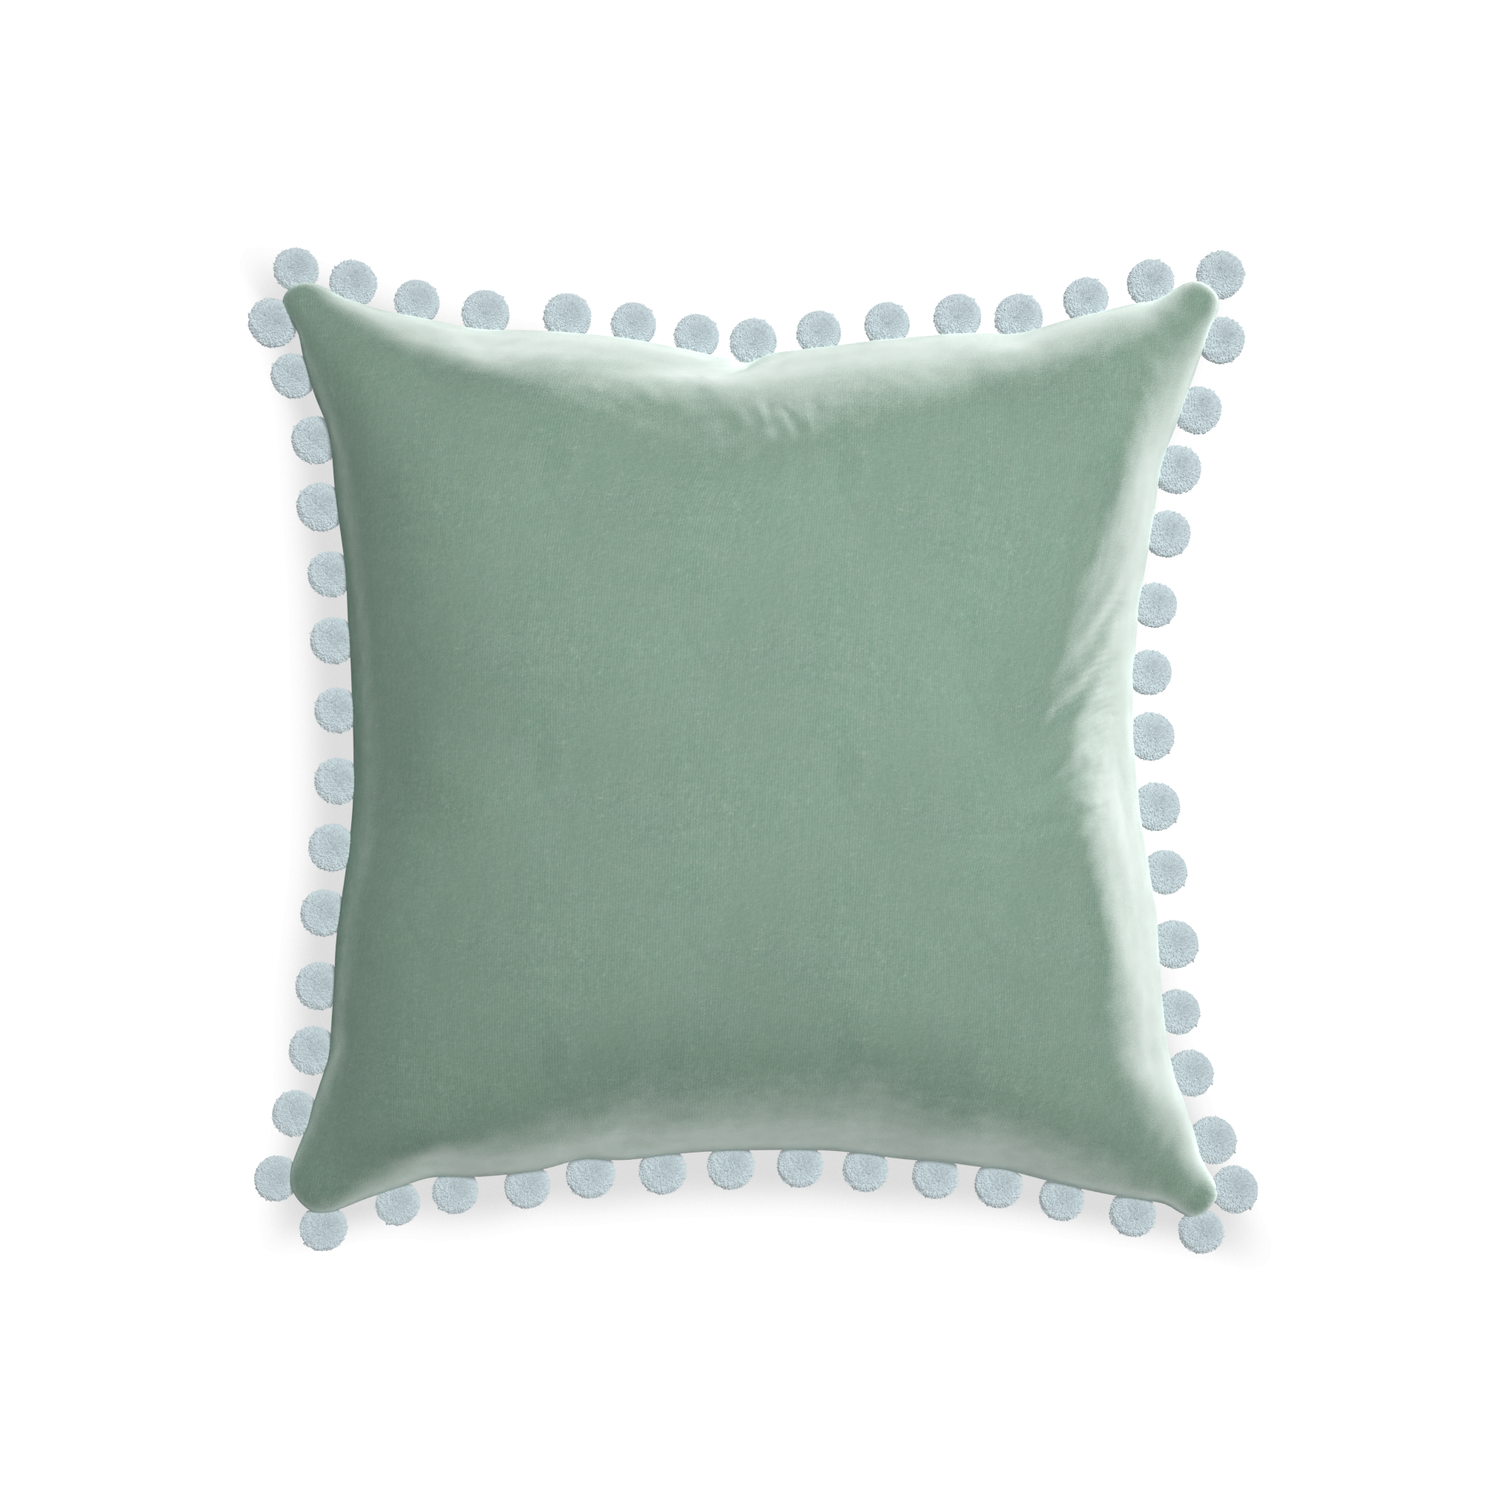 square blue green velvet pillow with light blue pom poms